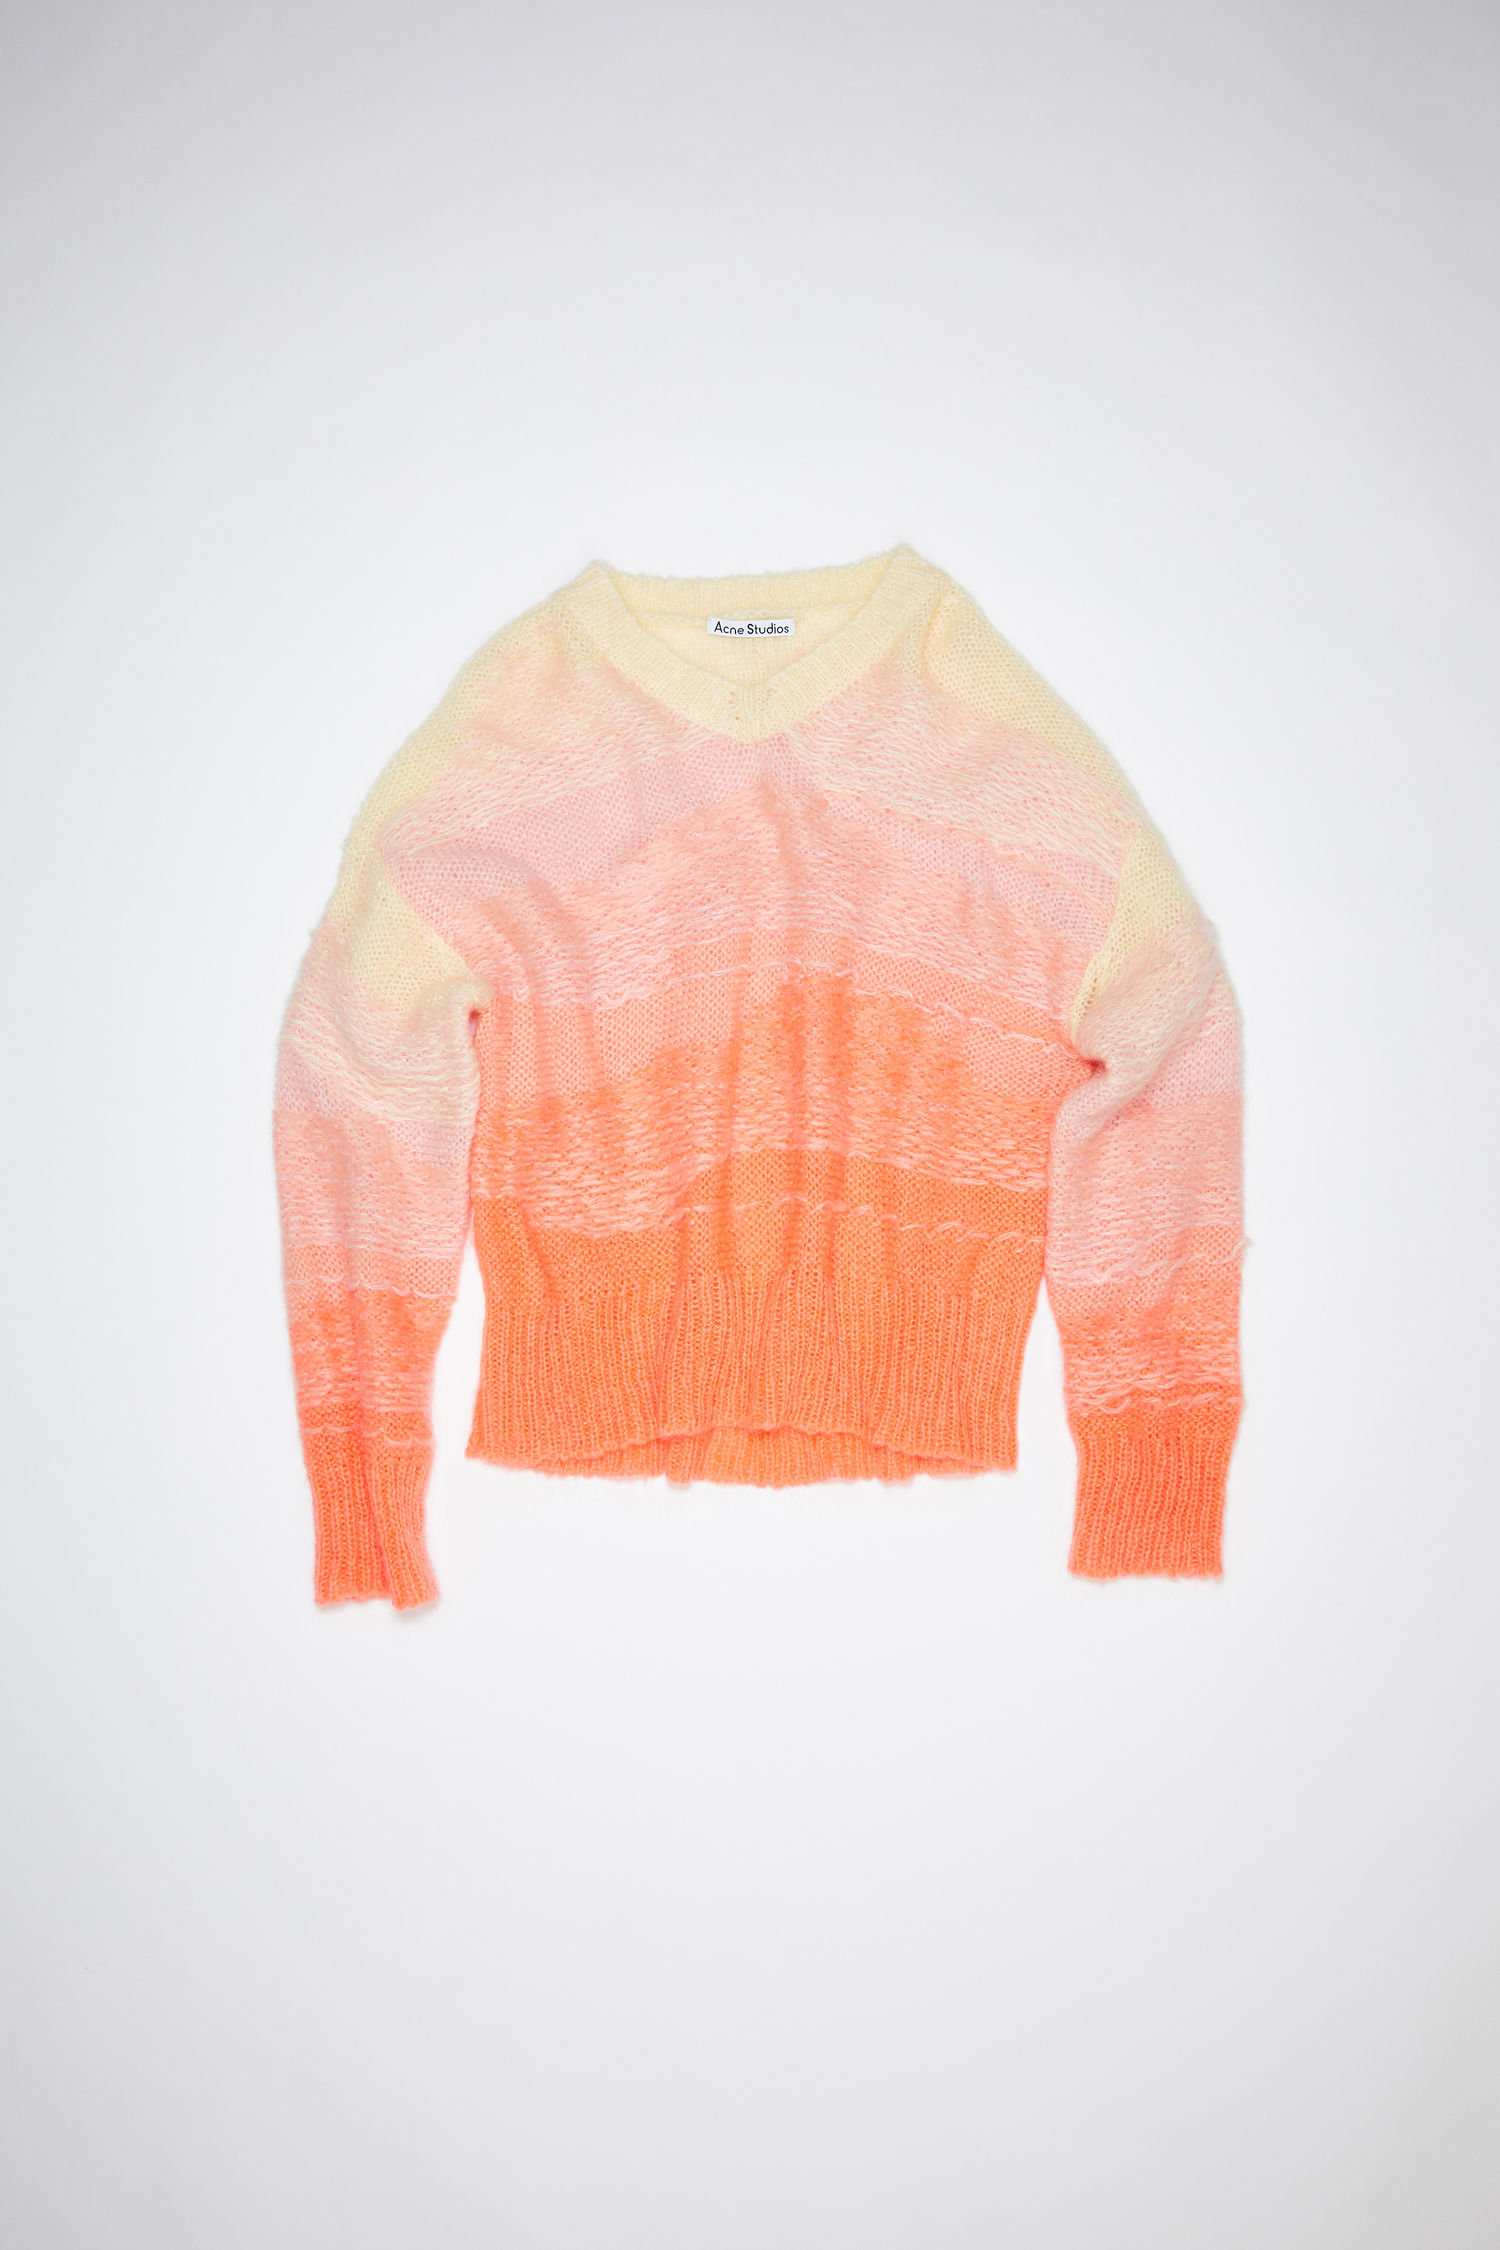 Acne Studios - Gradient sweater - Peach/multi